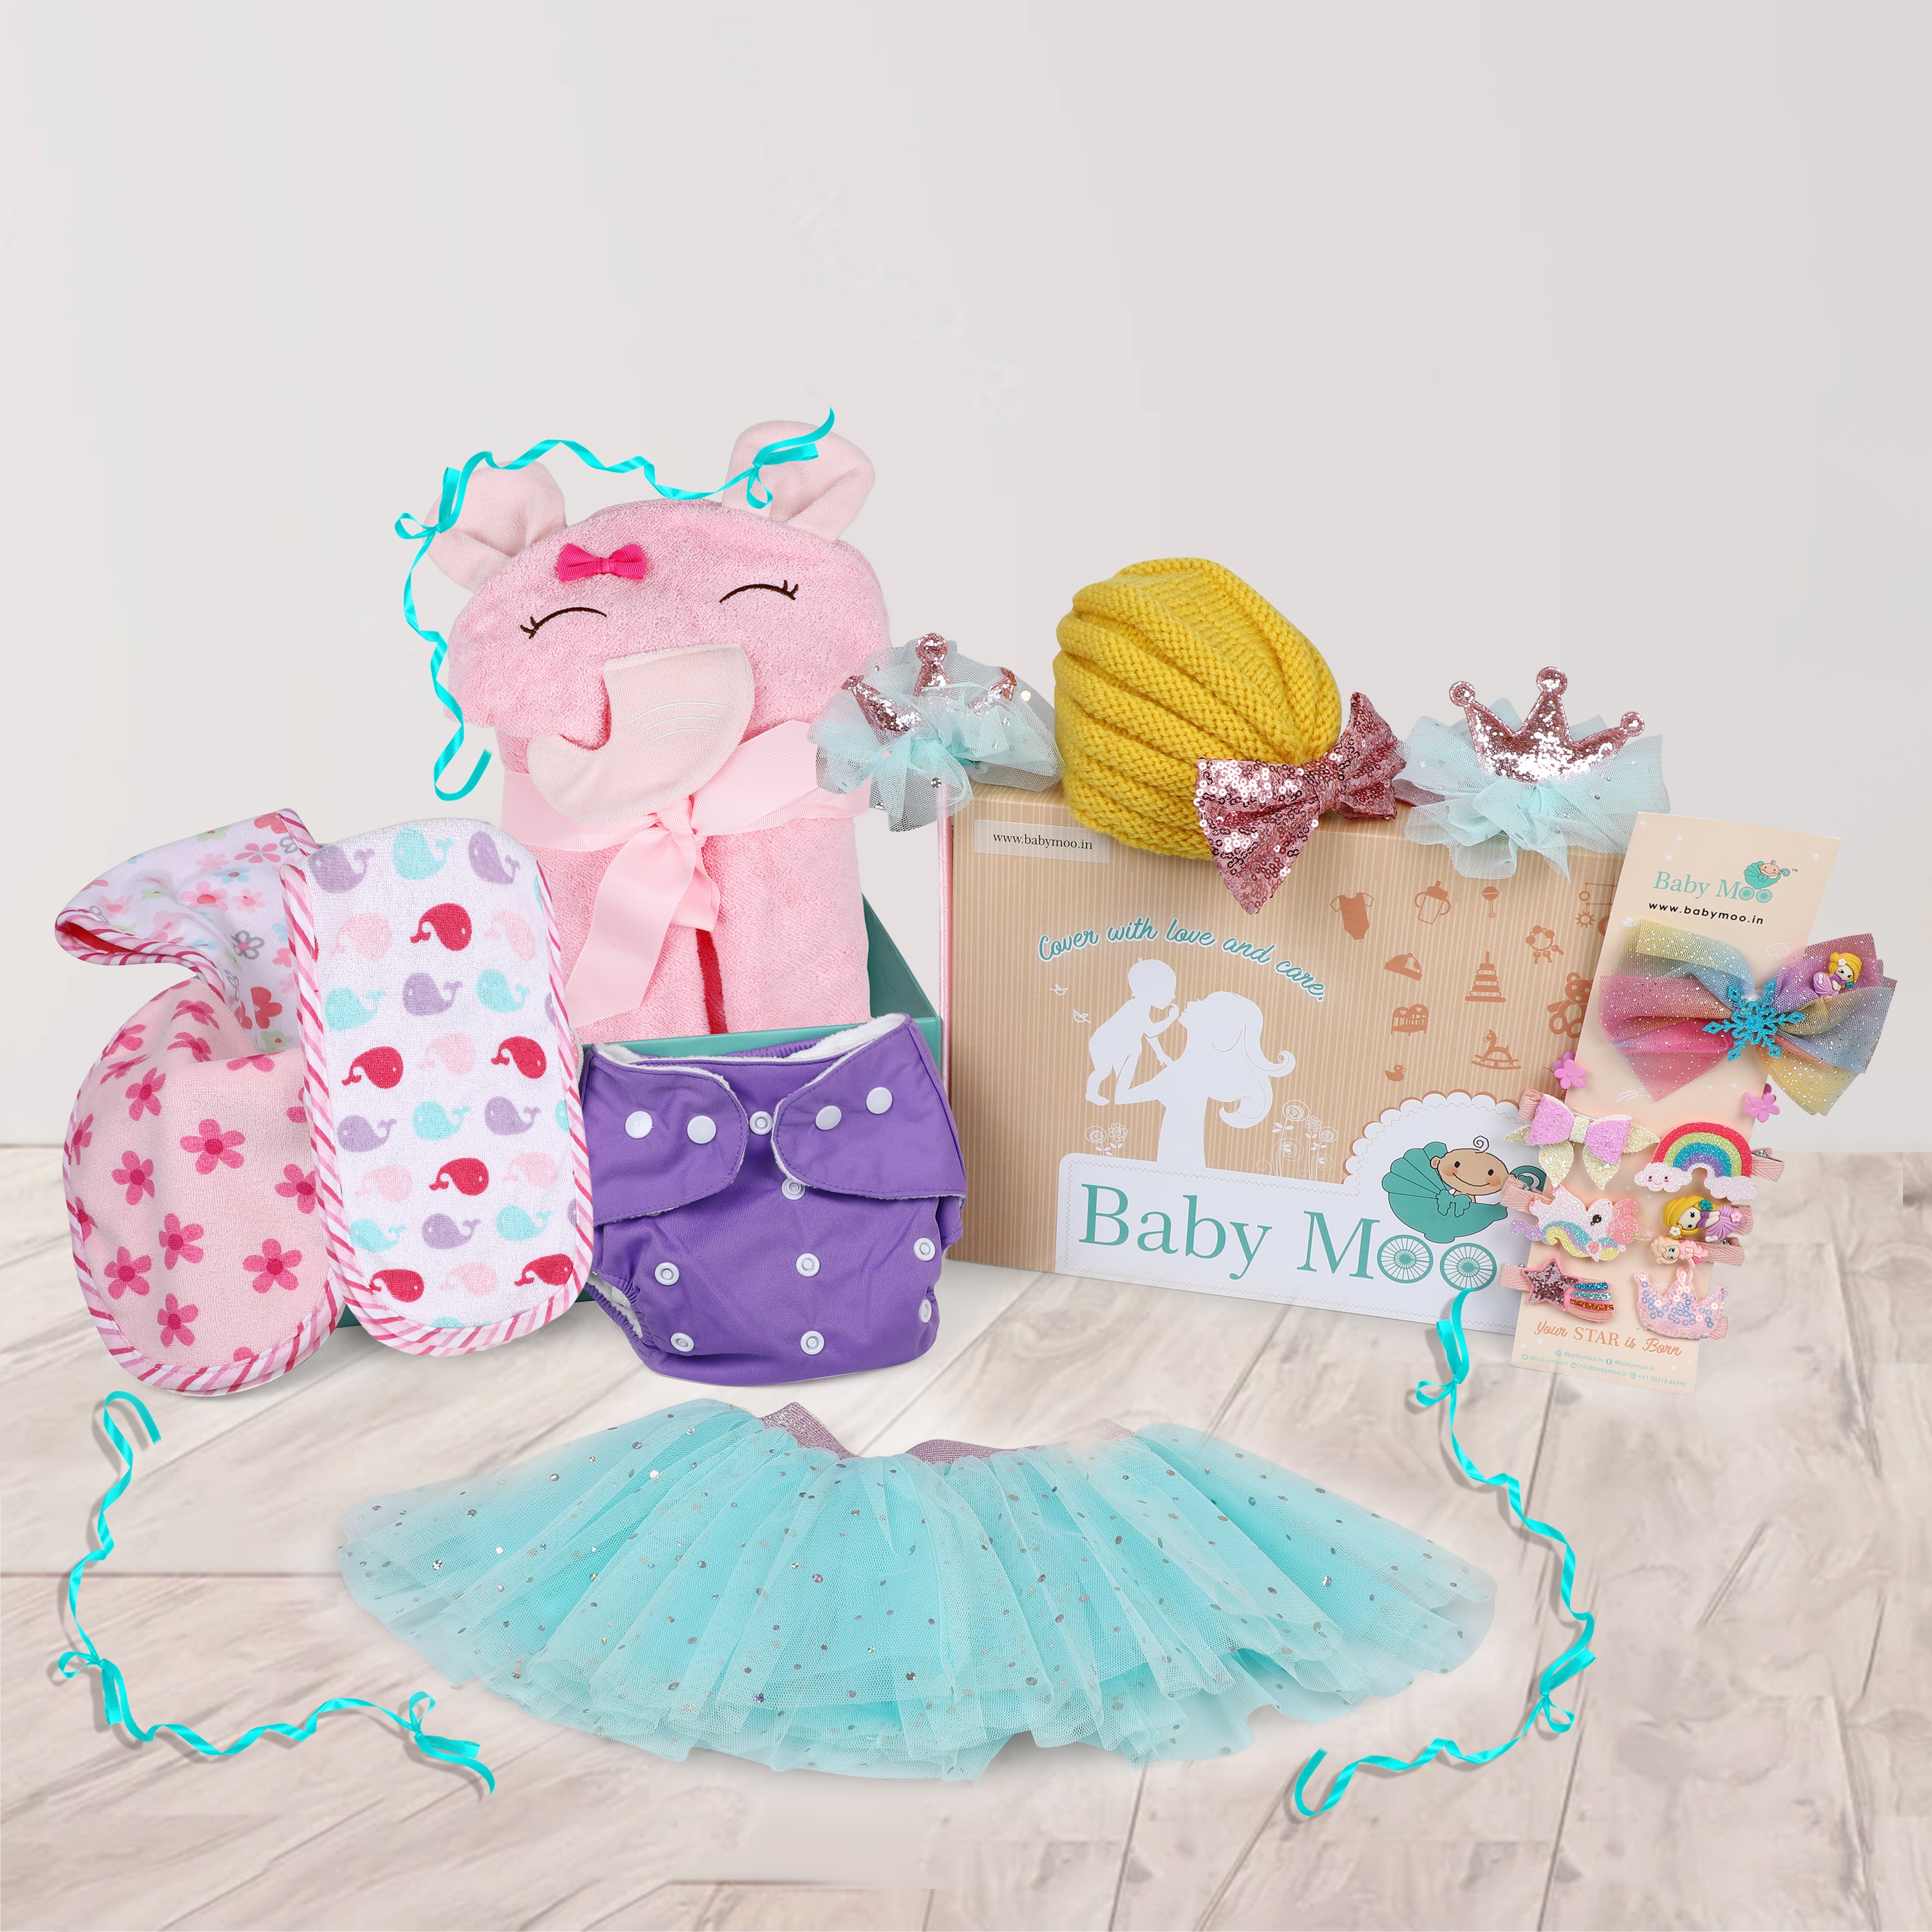 Royal Princess 20 Pcs Gift Hamper Multicolour - Baby Moo